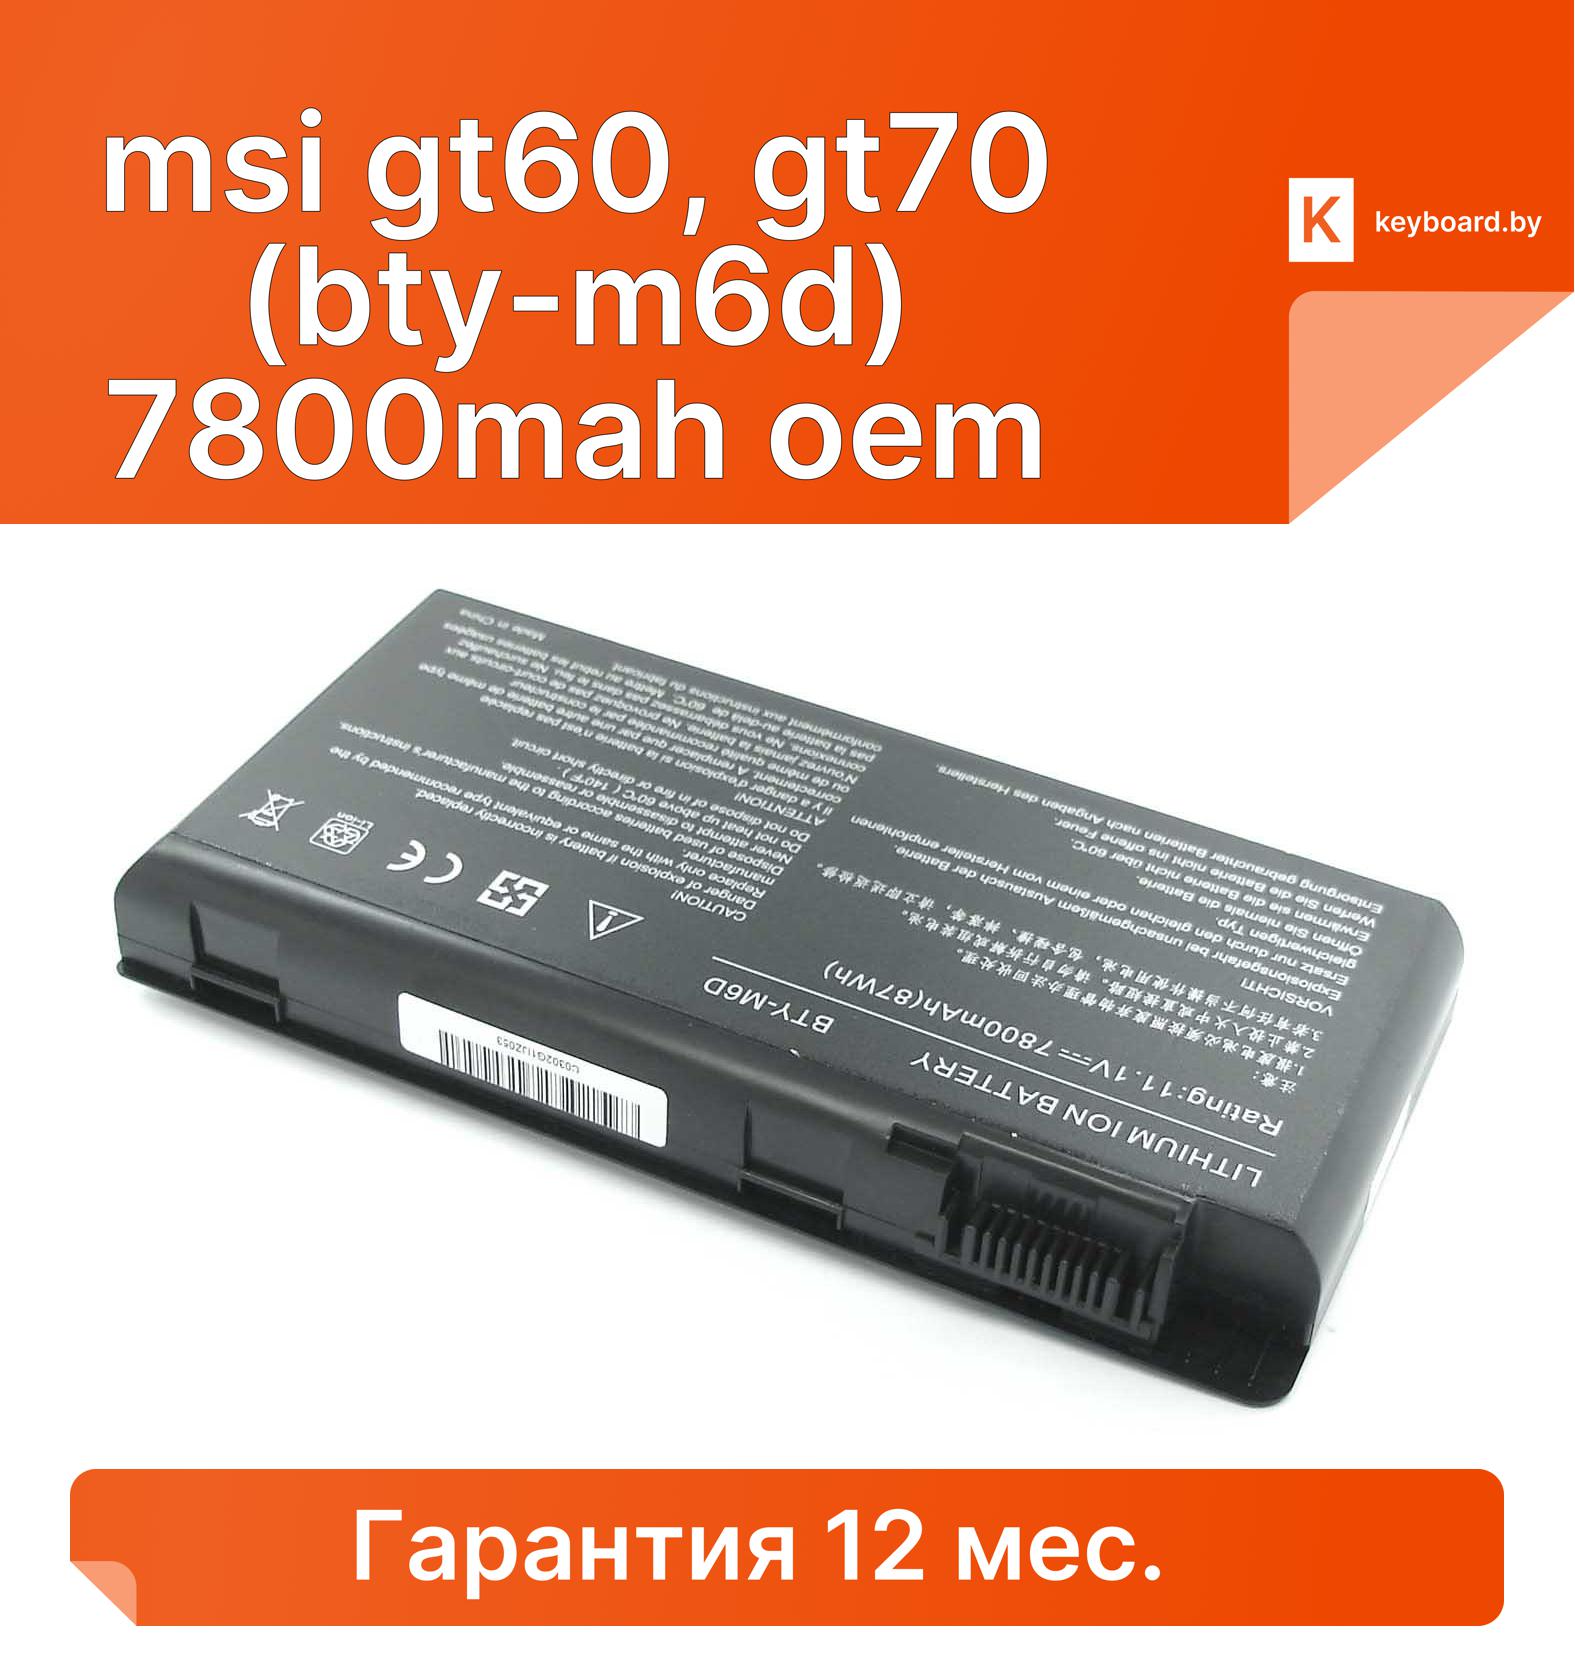 Аккумуляторная батарея для ноутбука msi gt60, gt70 (bty-m6d) 7800mah oem